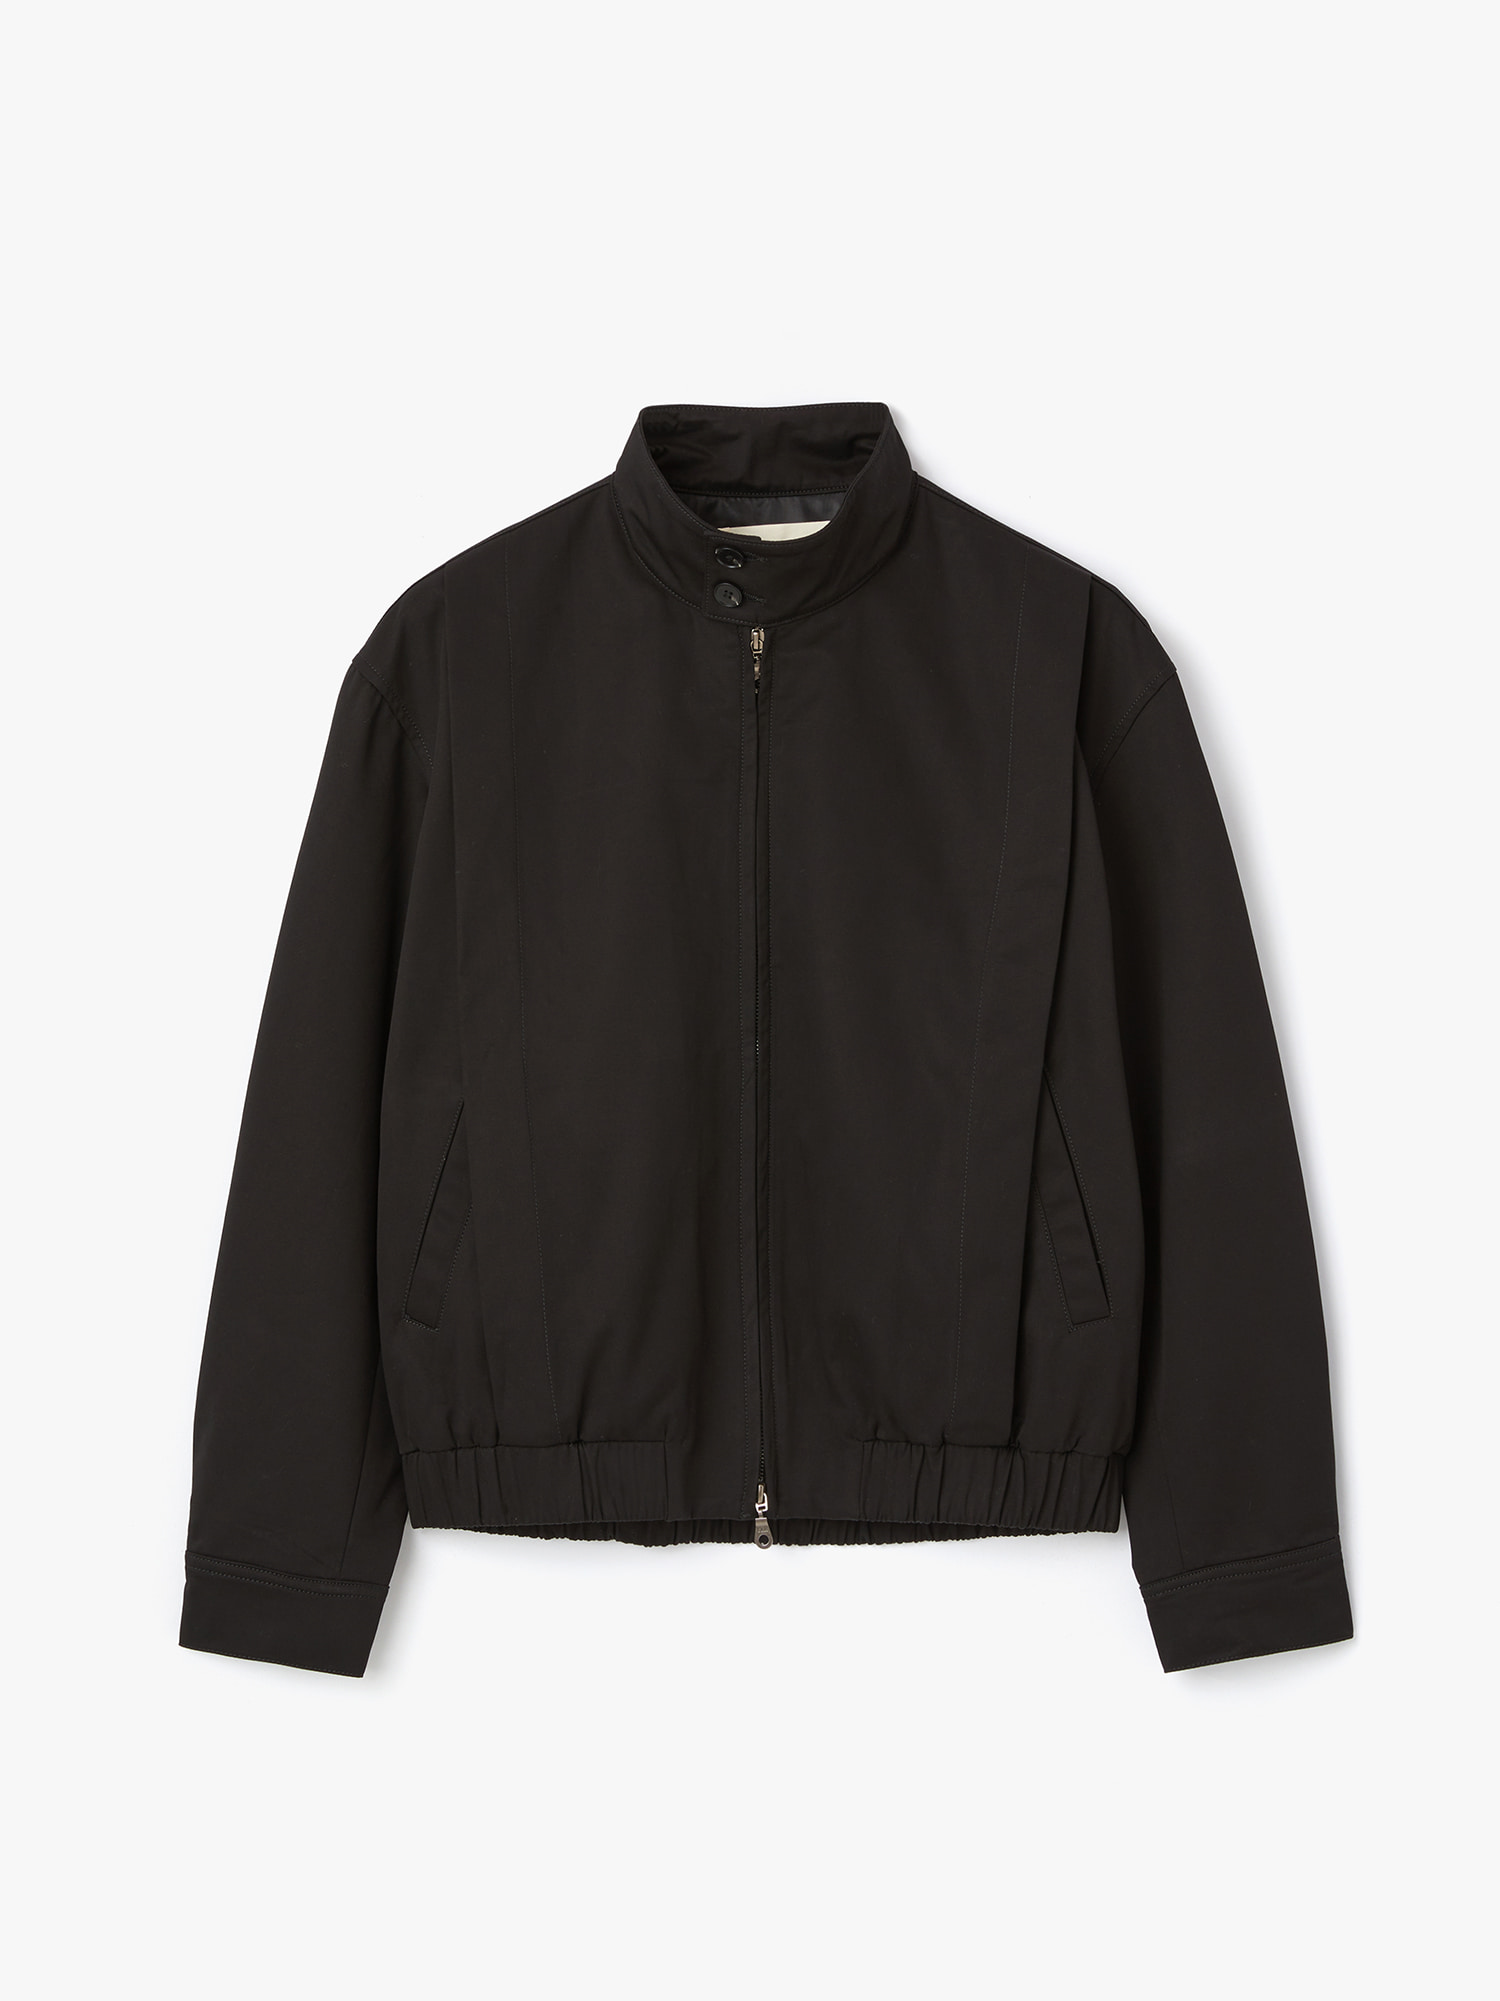 Berkshire Chino Harrington Jacket (Black)